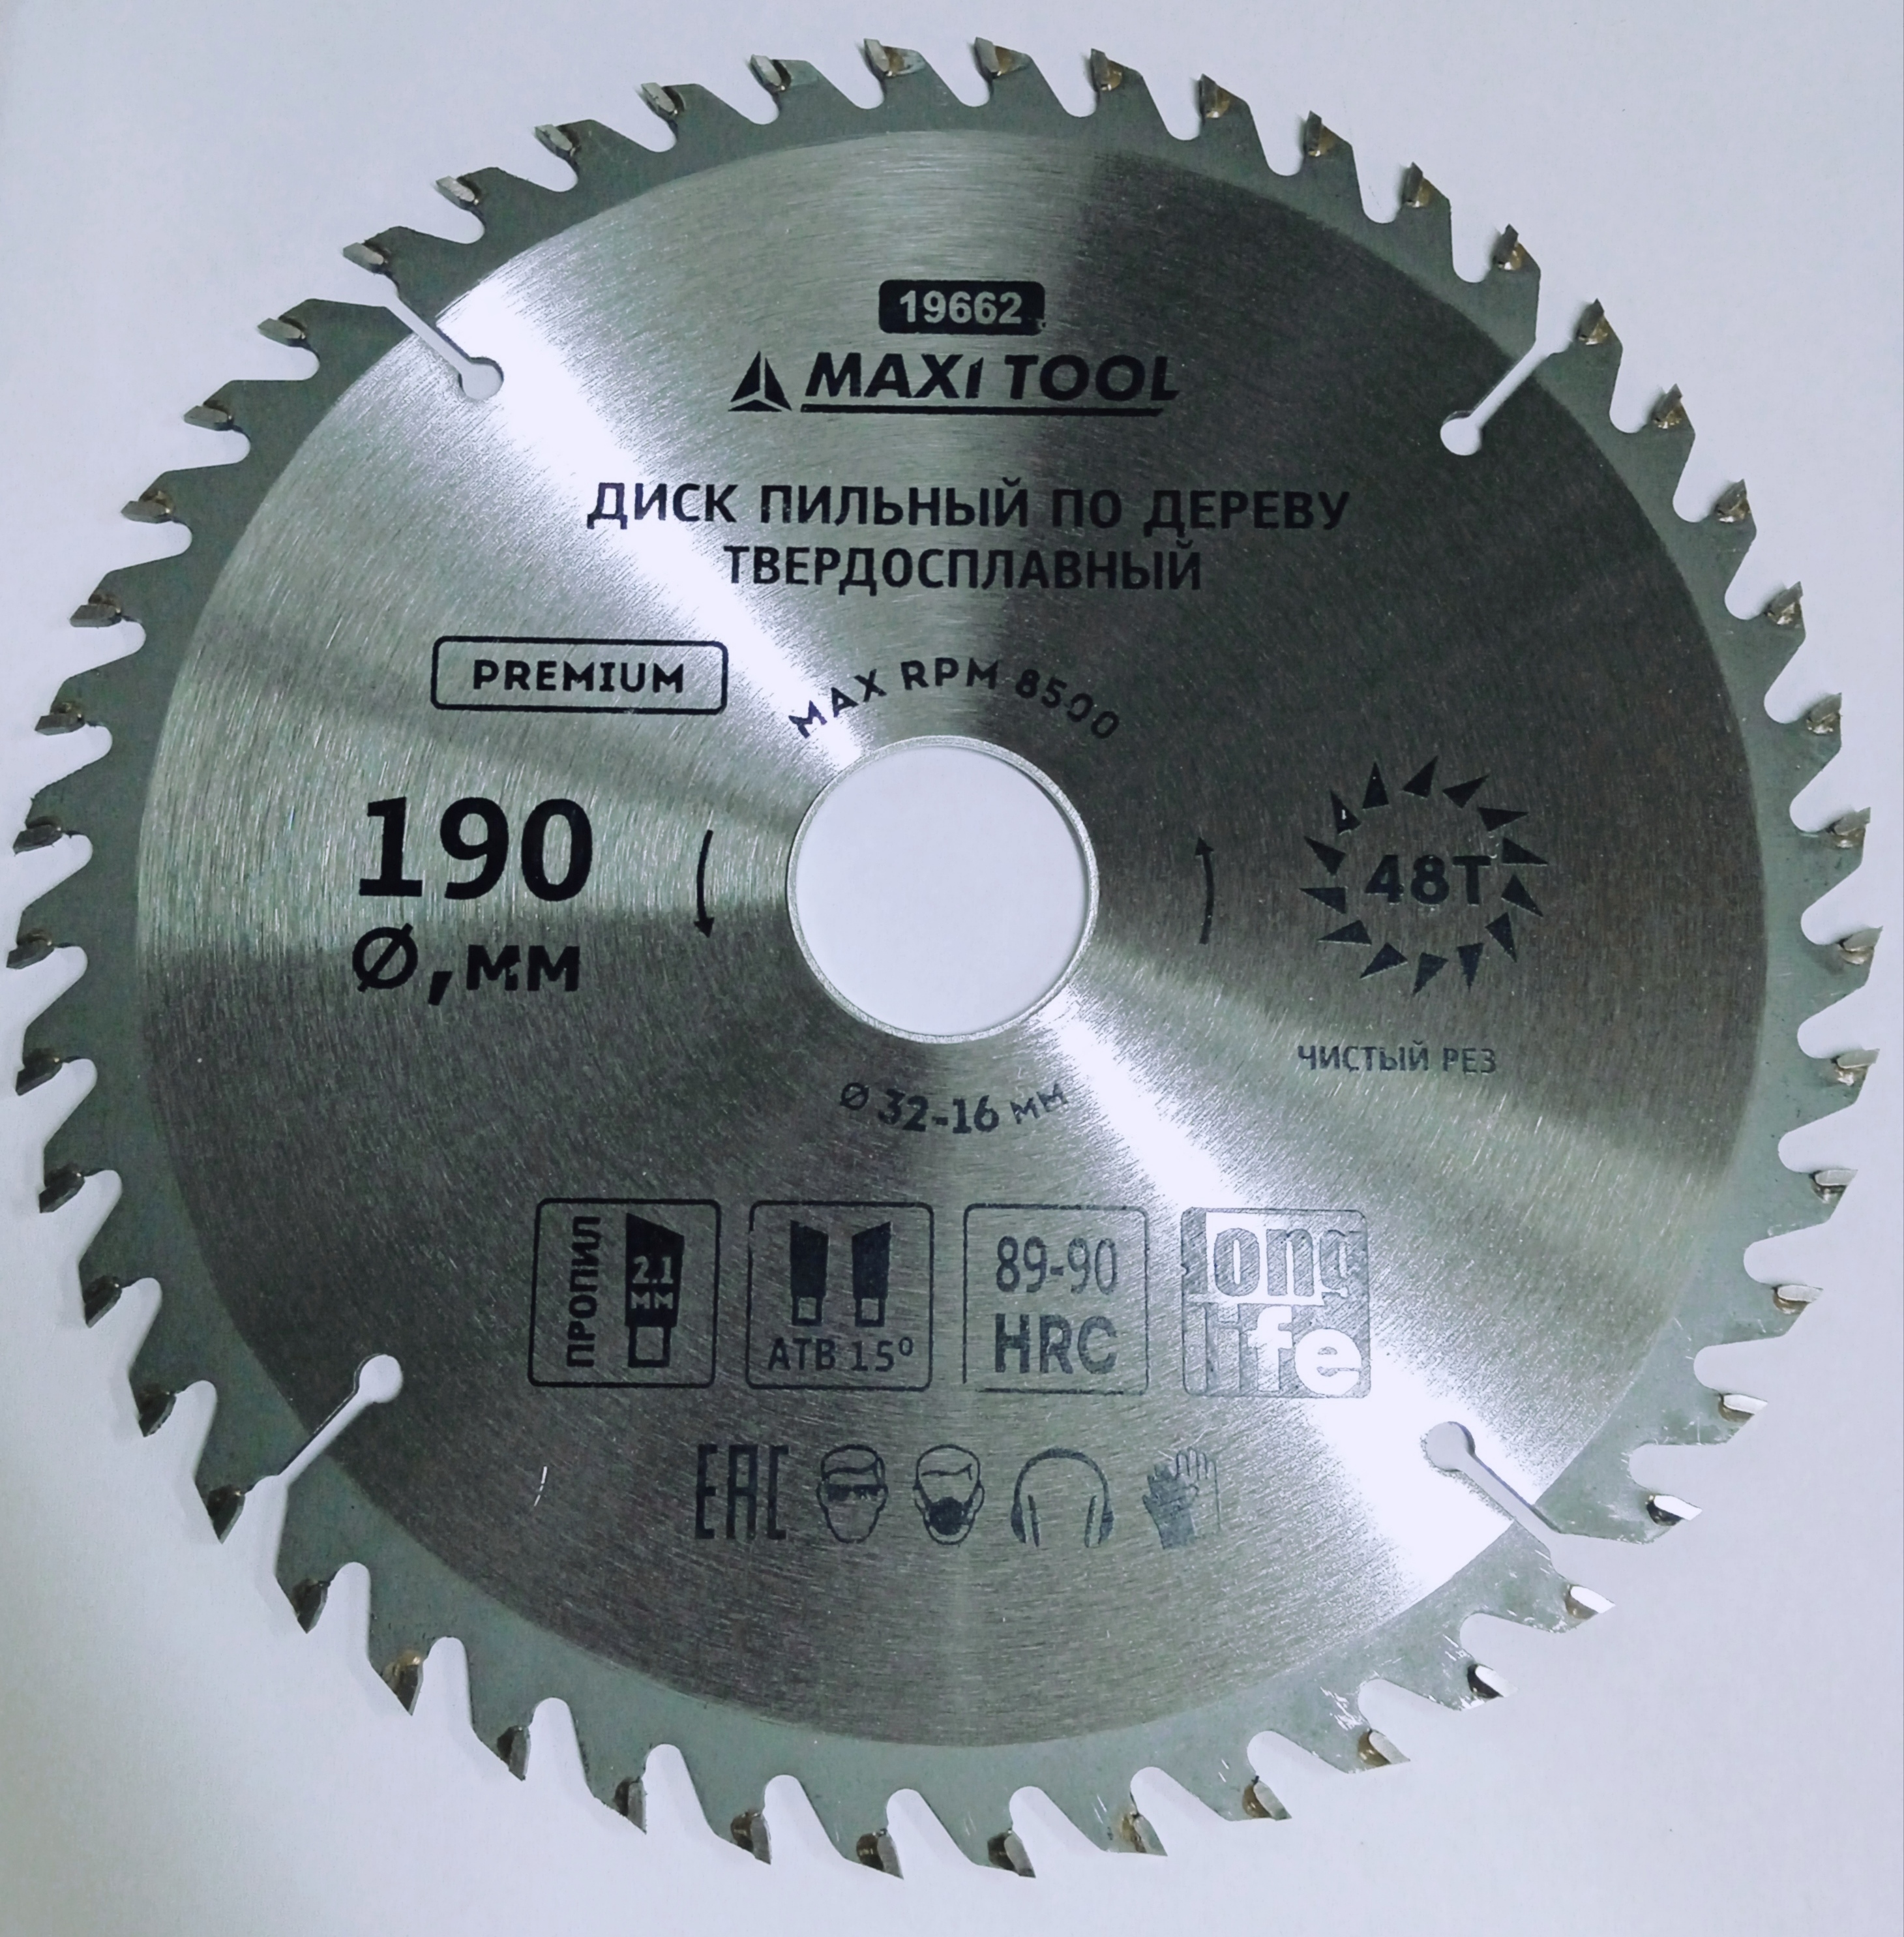 Maxi tool. Диск пильный Ресанта 190. Fs19657. Maxi Tool герметик.